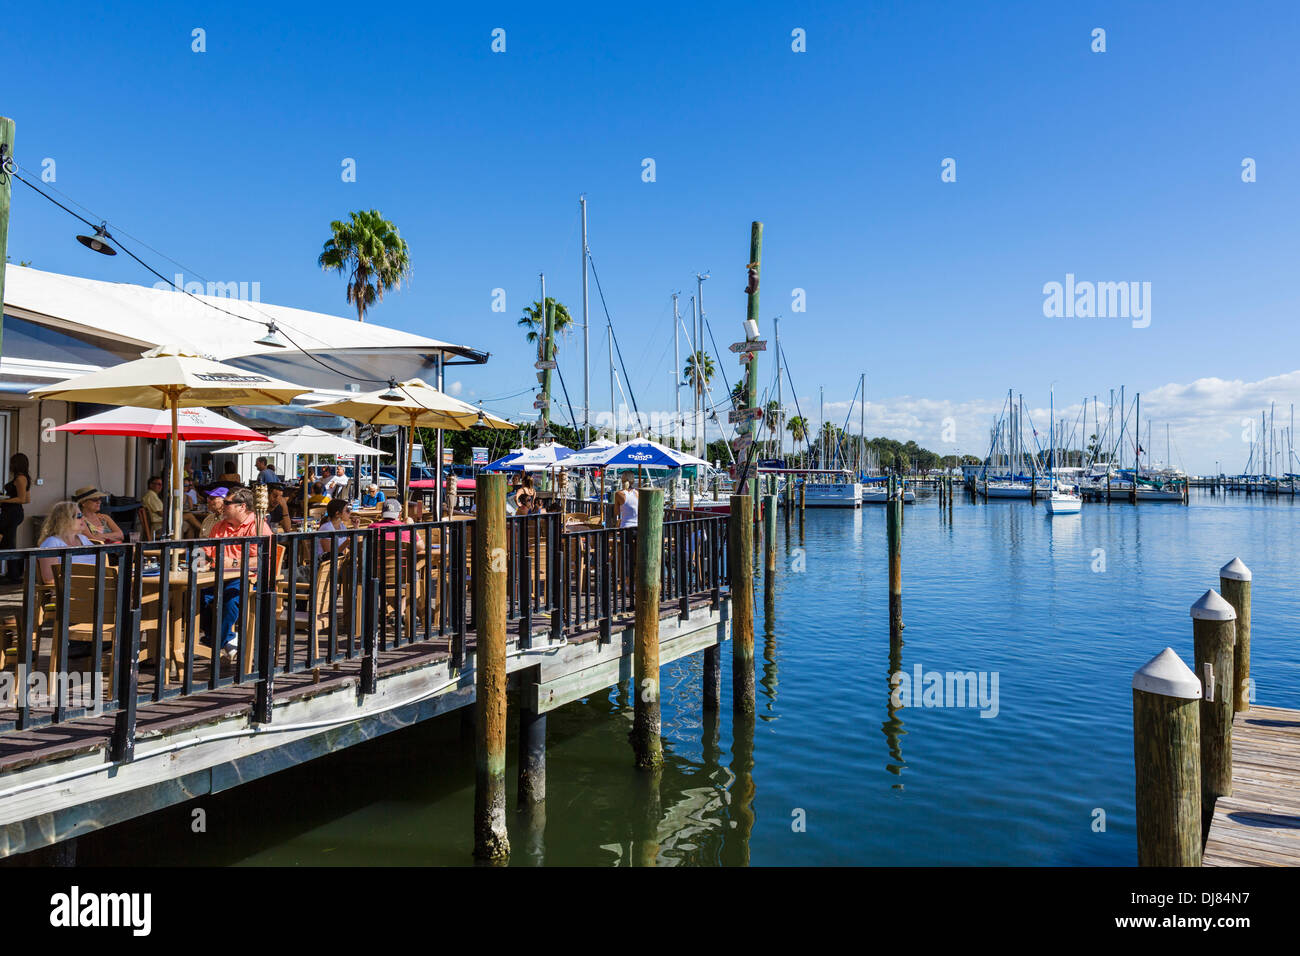 Le restaurant en front de mer dans le port de plaisance, St Petersburg, Florida, USA Banque D'Images